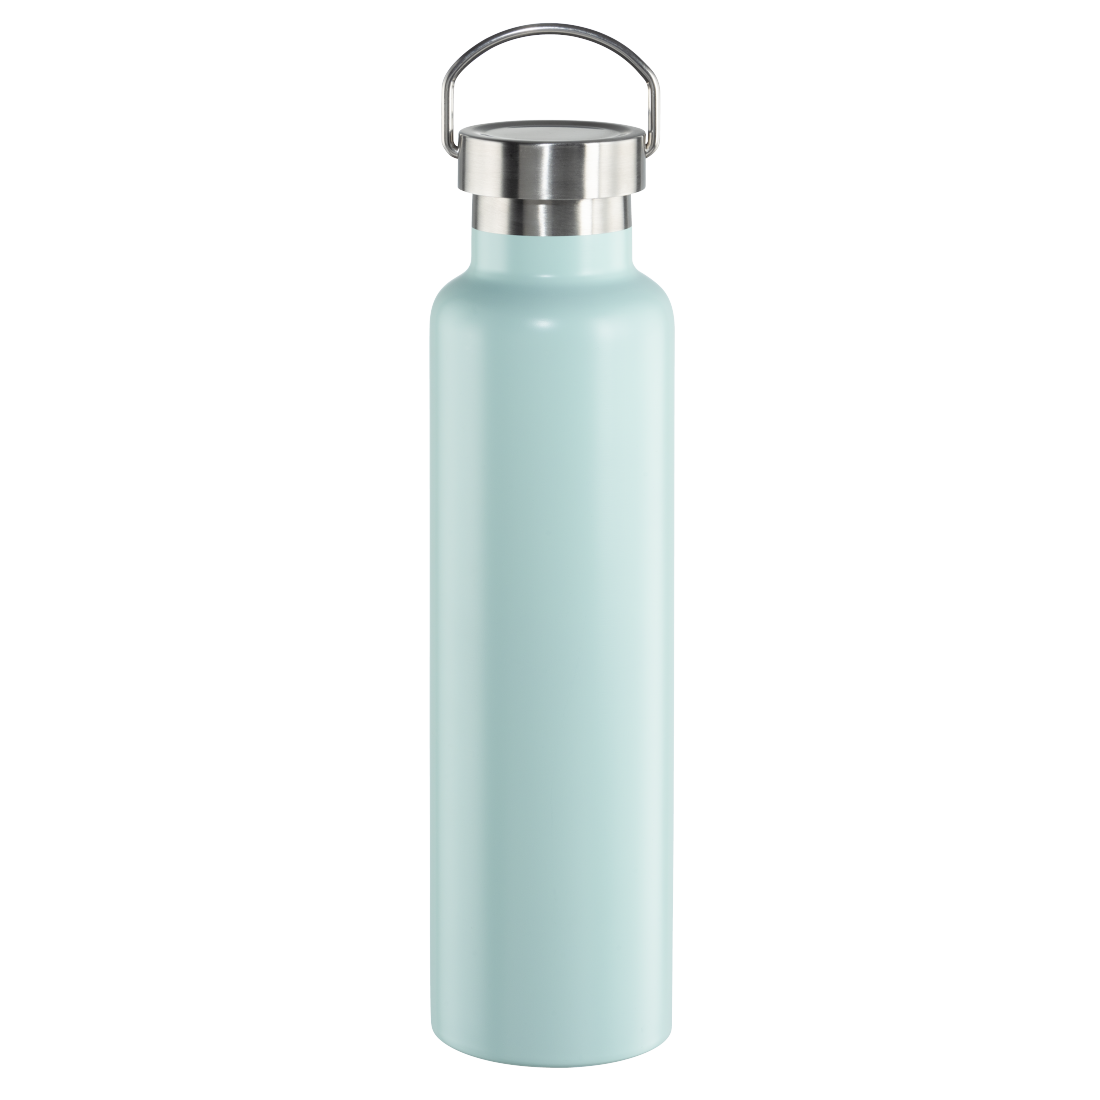 abx Druckfähige Abbildung - Xavax, Trinkflasche, 750 ml, Drehverschluss, auslaufsicher, kohlensäurefest, Blau